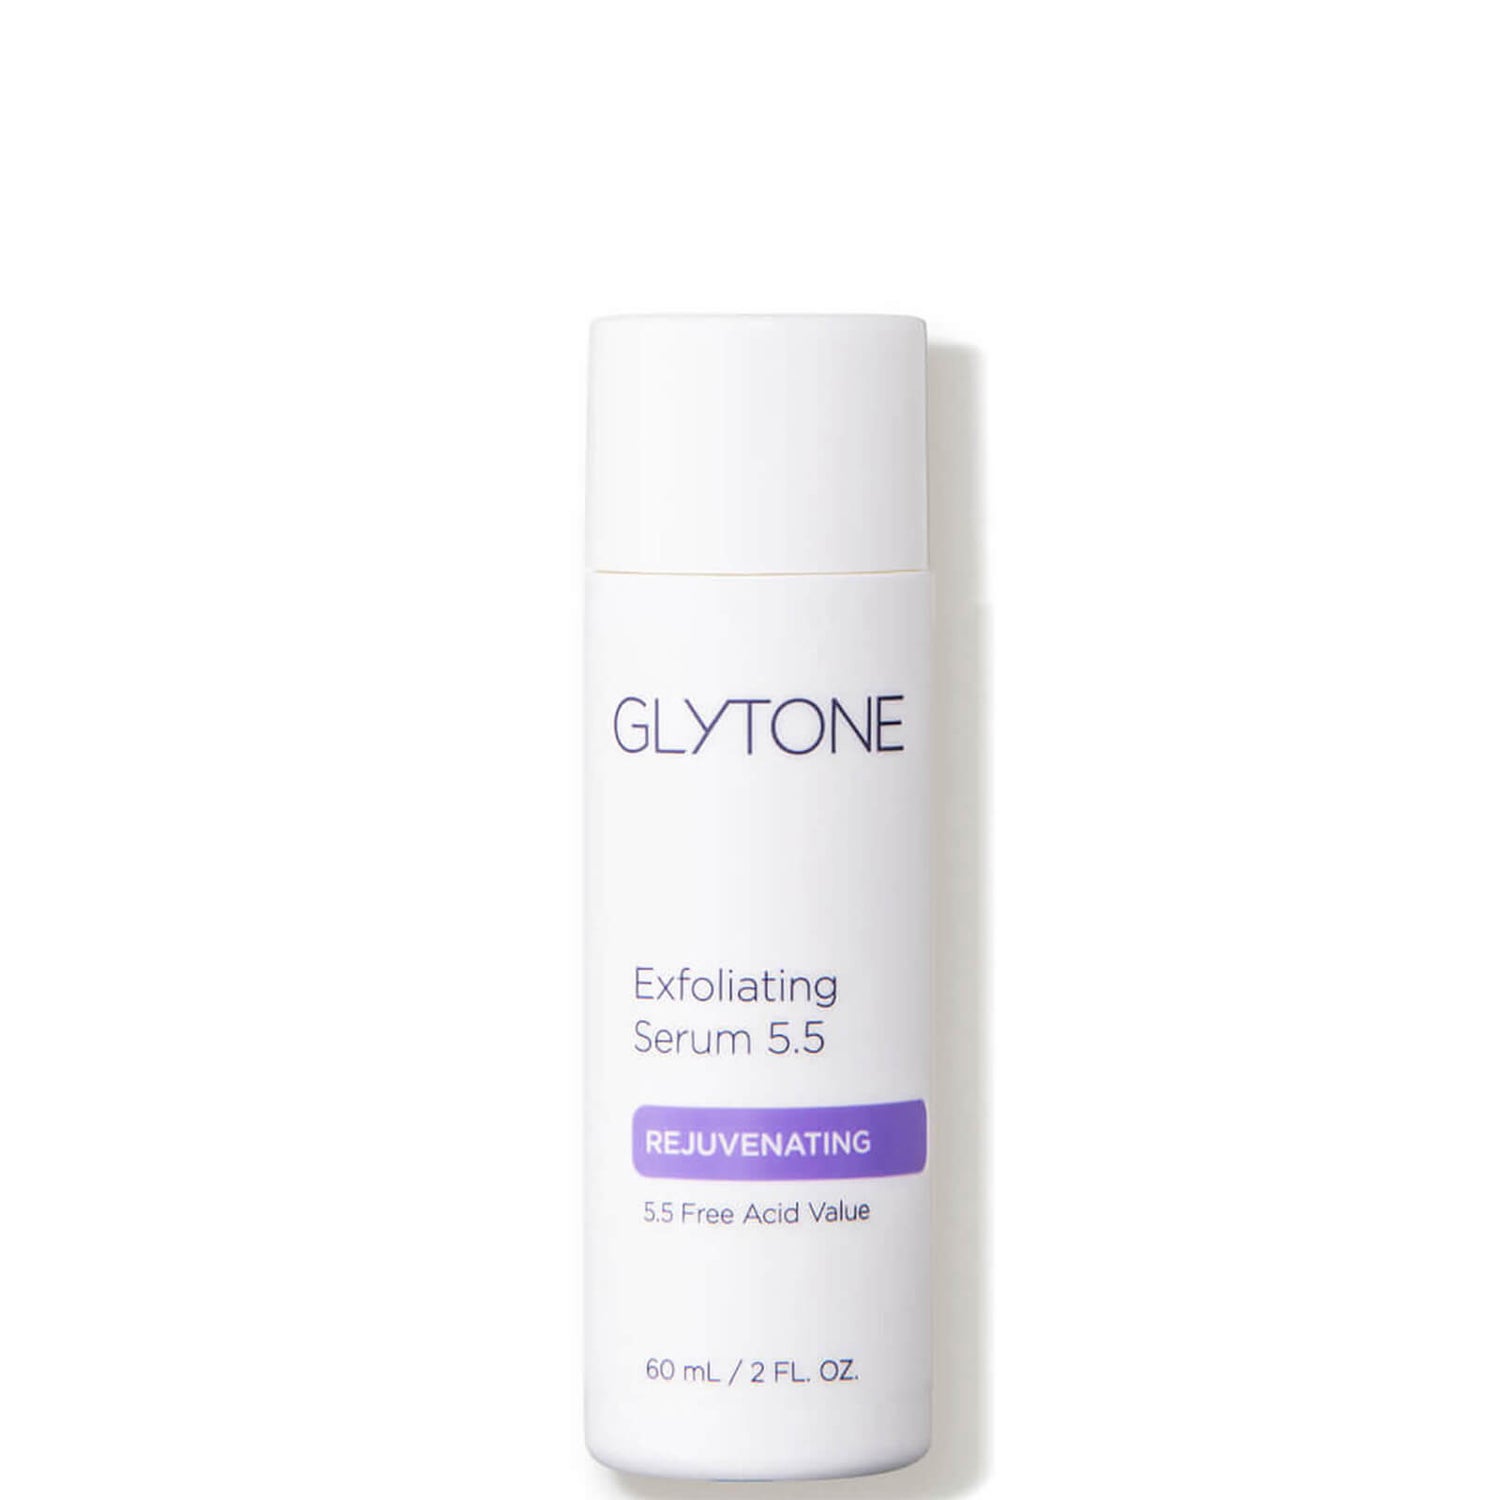 Glytone Exfoliating Serum 5.5 2 fl. oz